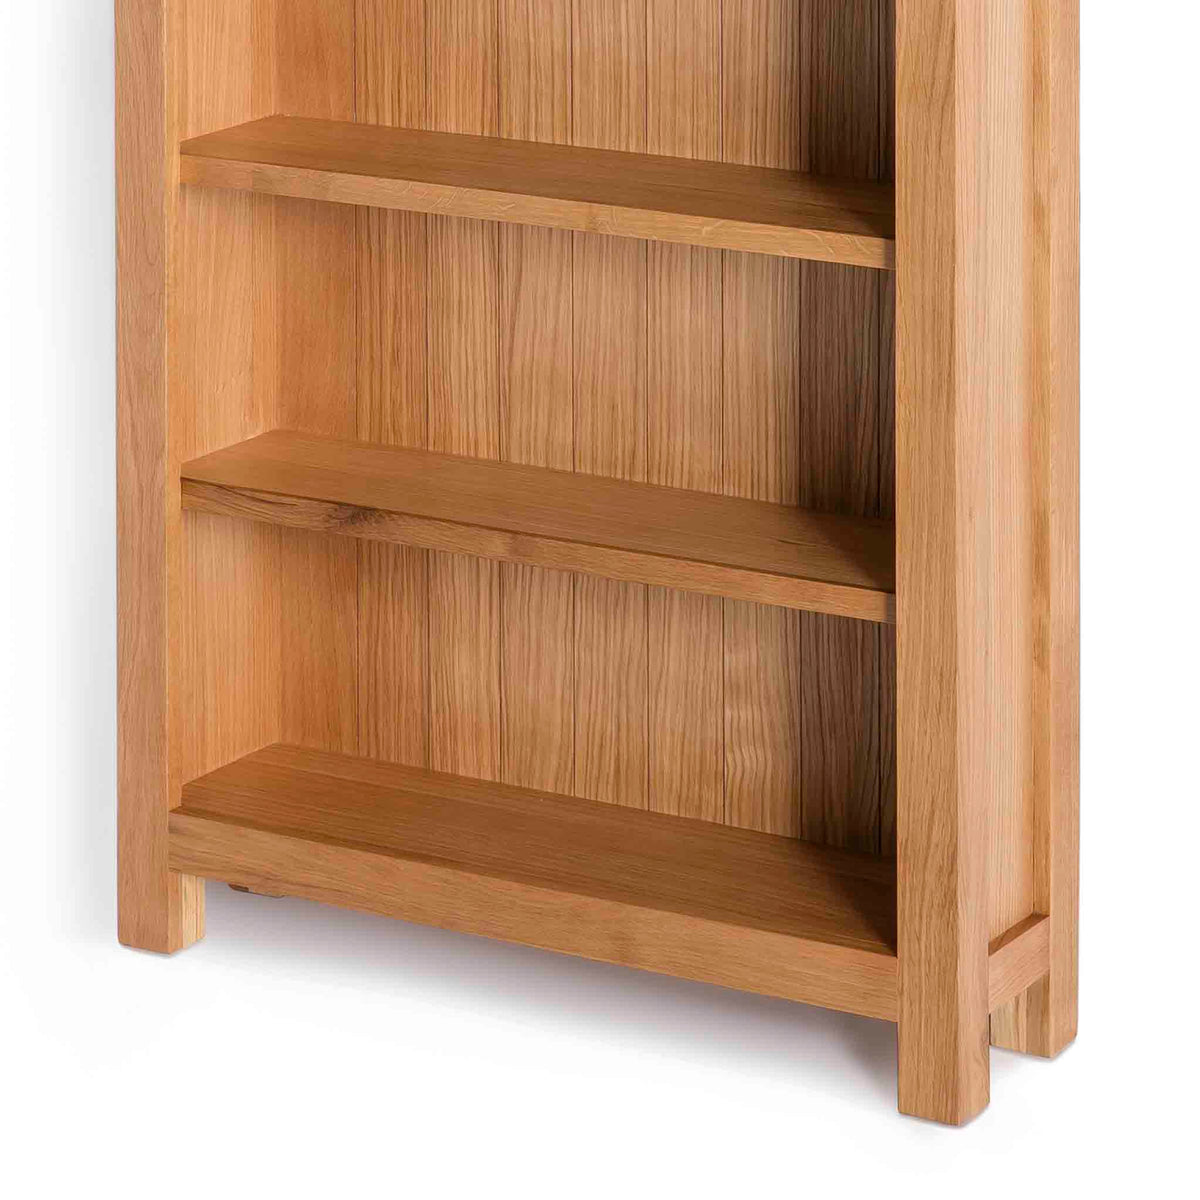 London Oak Large Bookcase - Close up of bottom shelving on bookcase